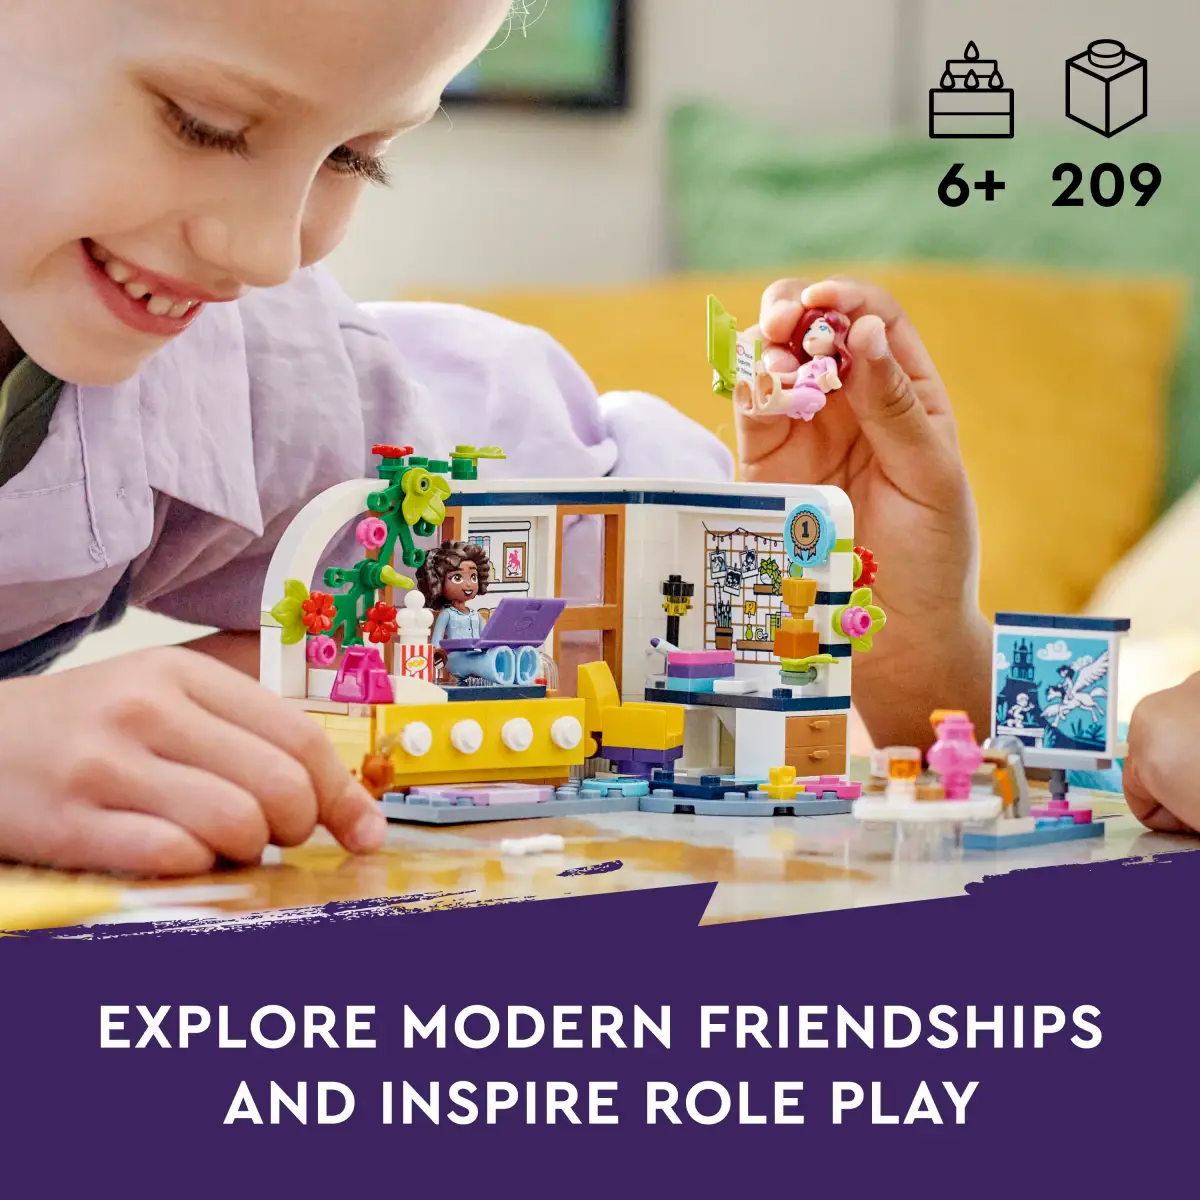 LEGO Friends Aliya's Room Building Toy Set, 209 Pieces, Multicolour, 6Y+